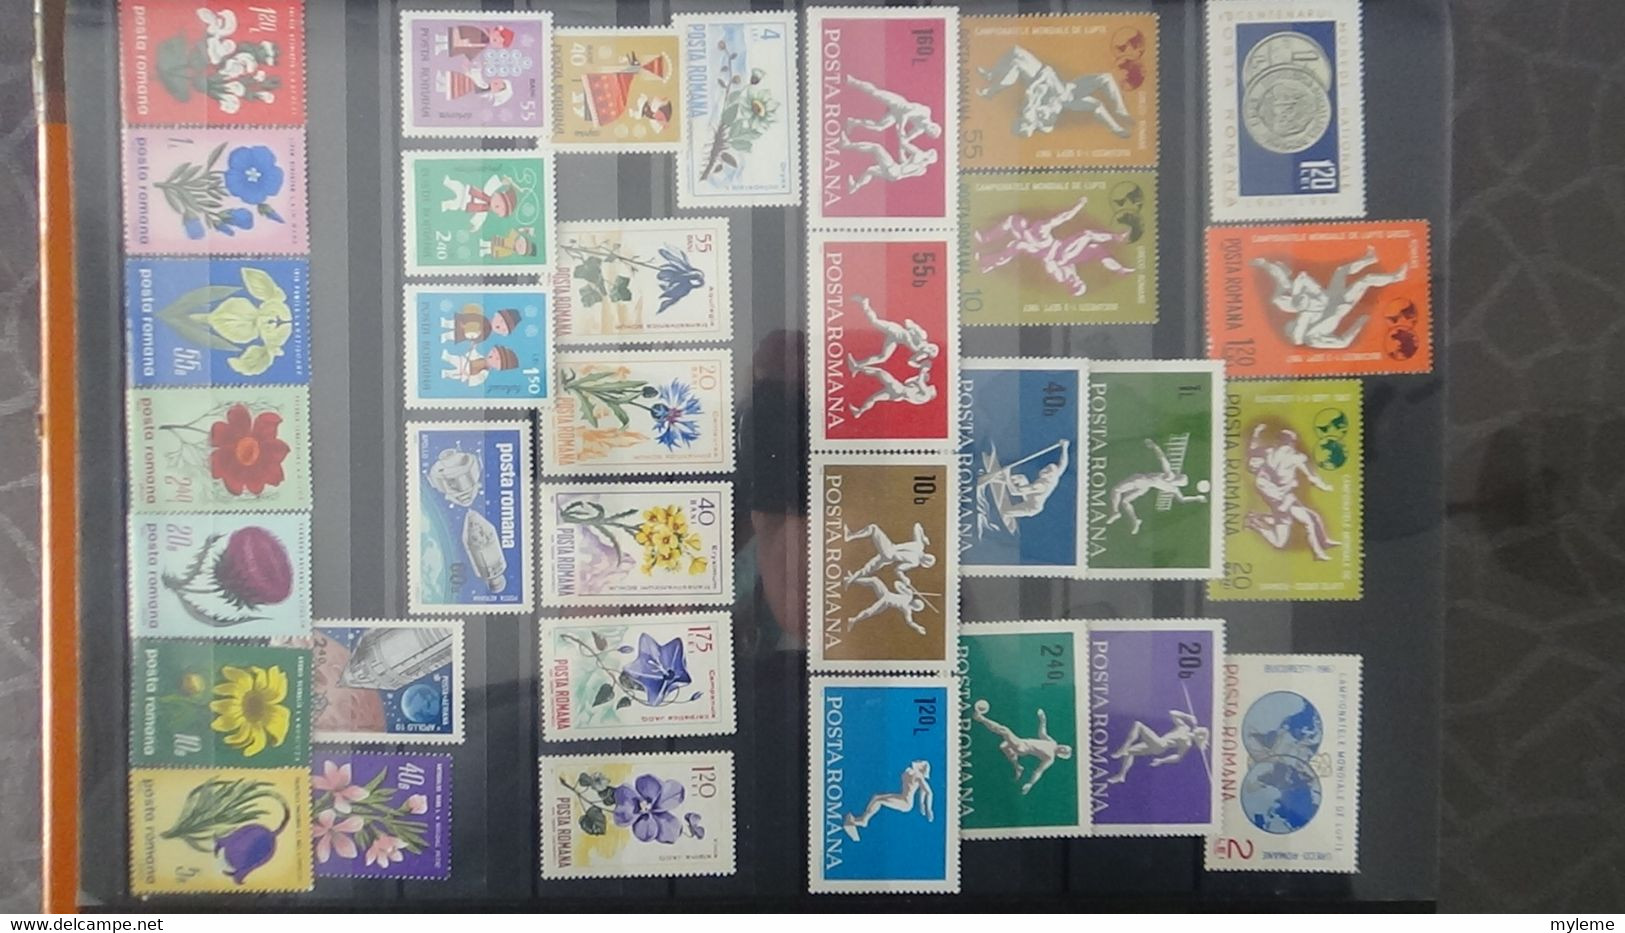 S90 Collection de Roumanie en timbres **.  A saisir !!!